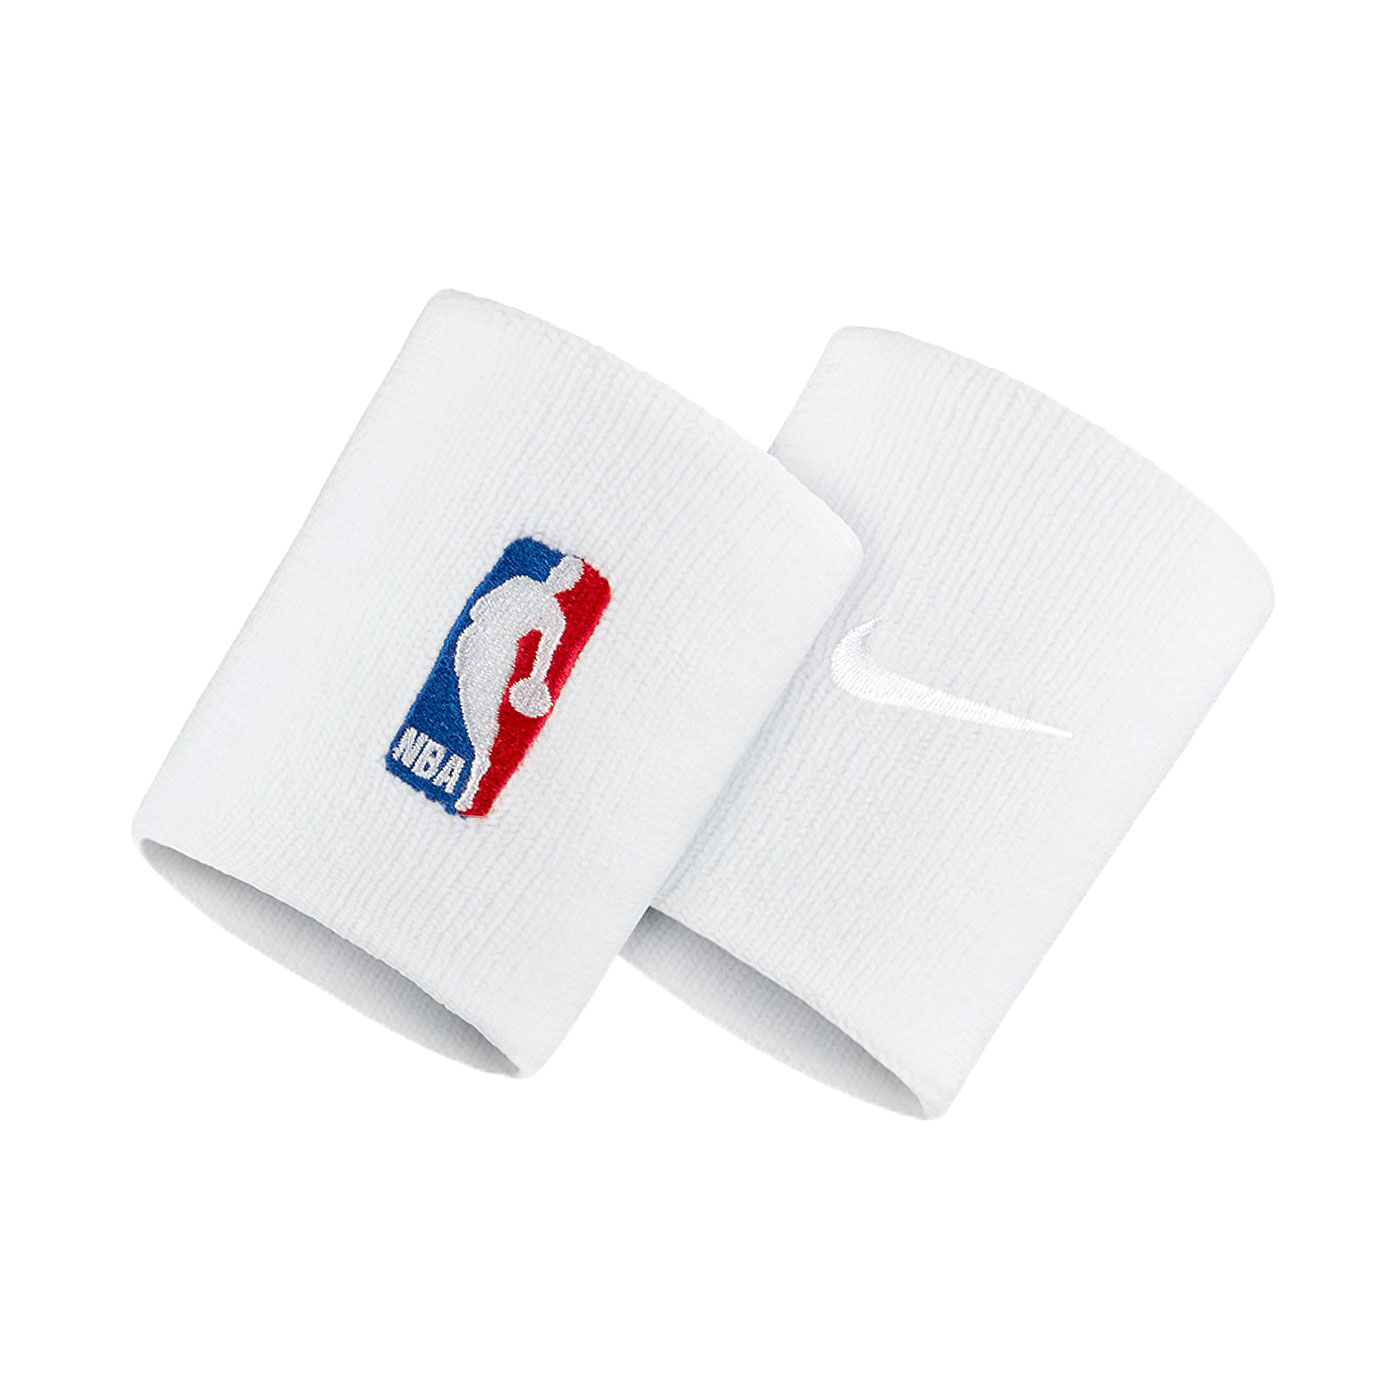 NIKE NBA DRI-FIT 護腕套(客場) NKN03100OS - 白紅藍